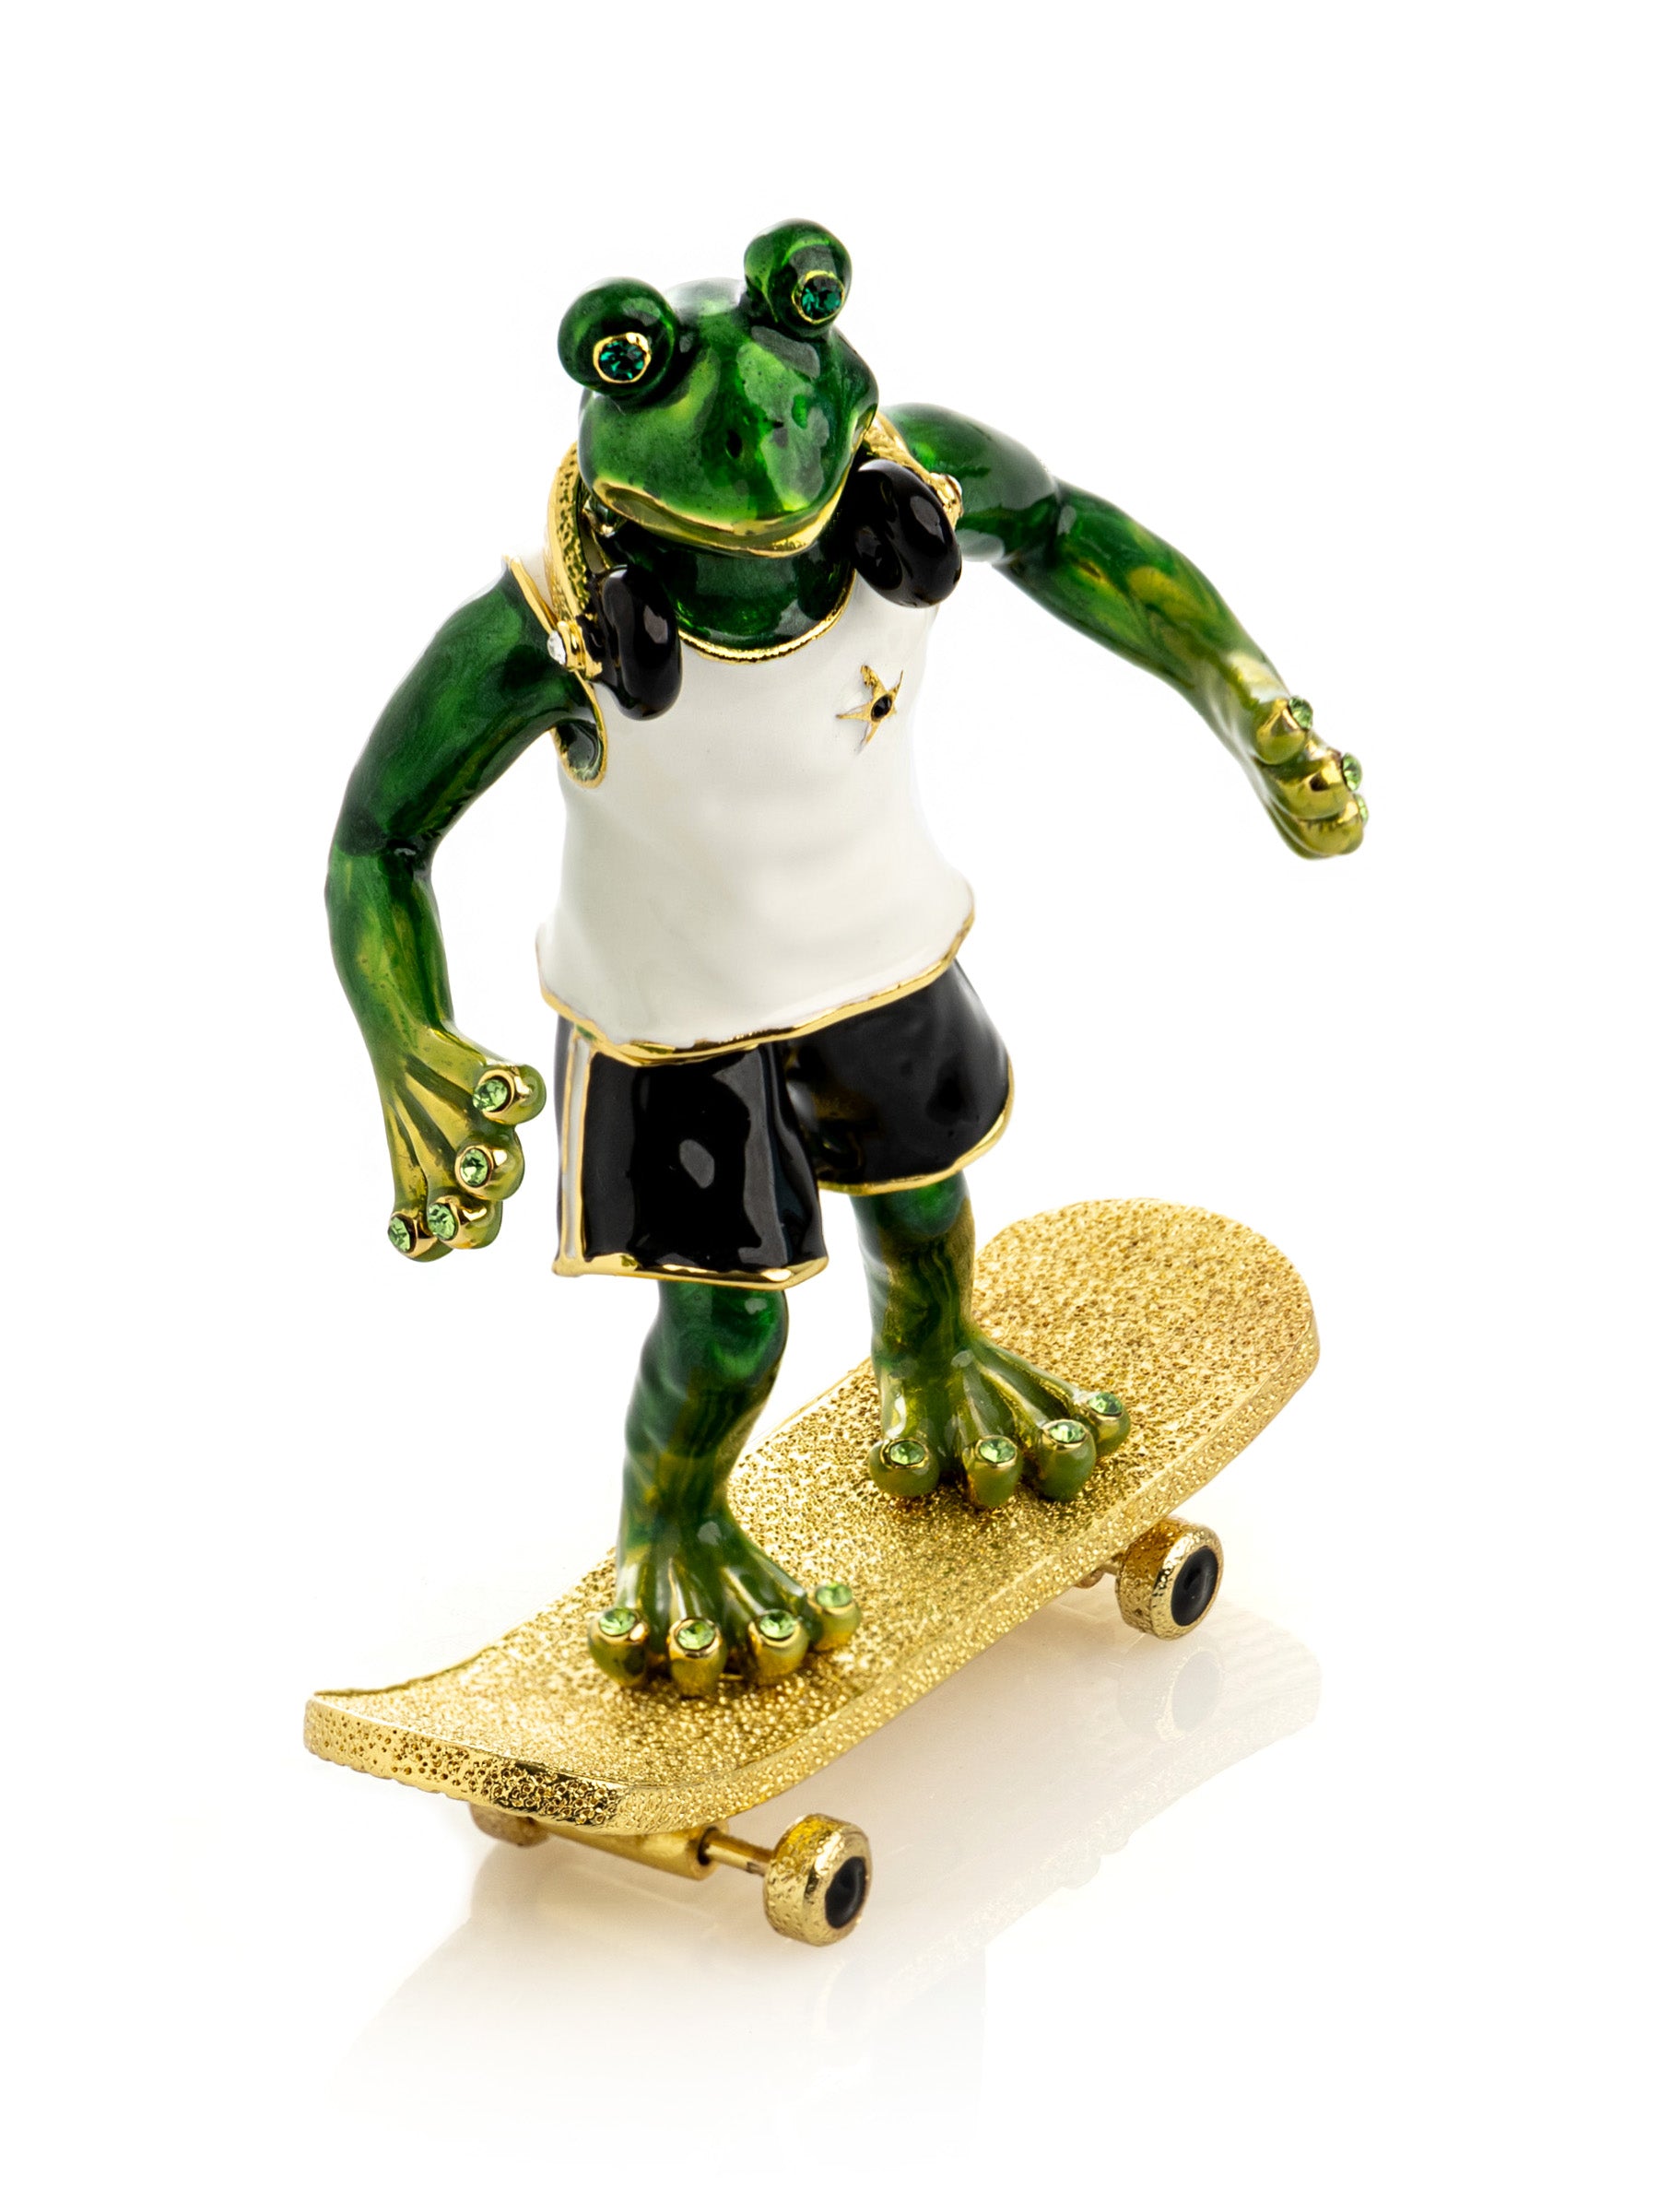 Skateboarding Frog